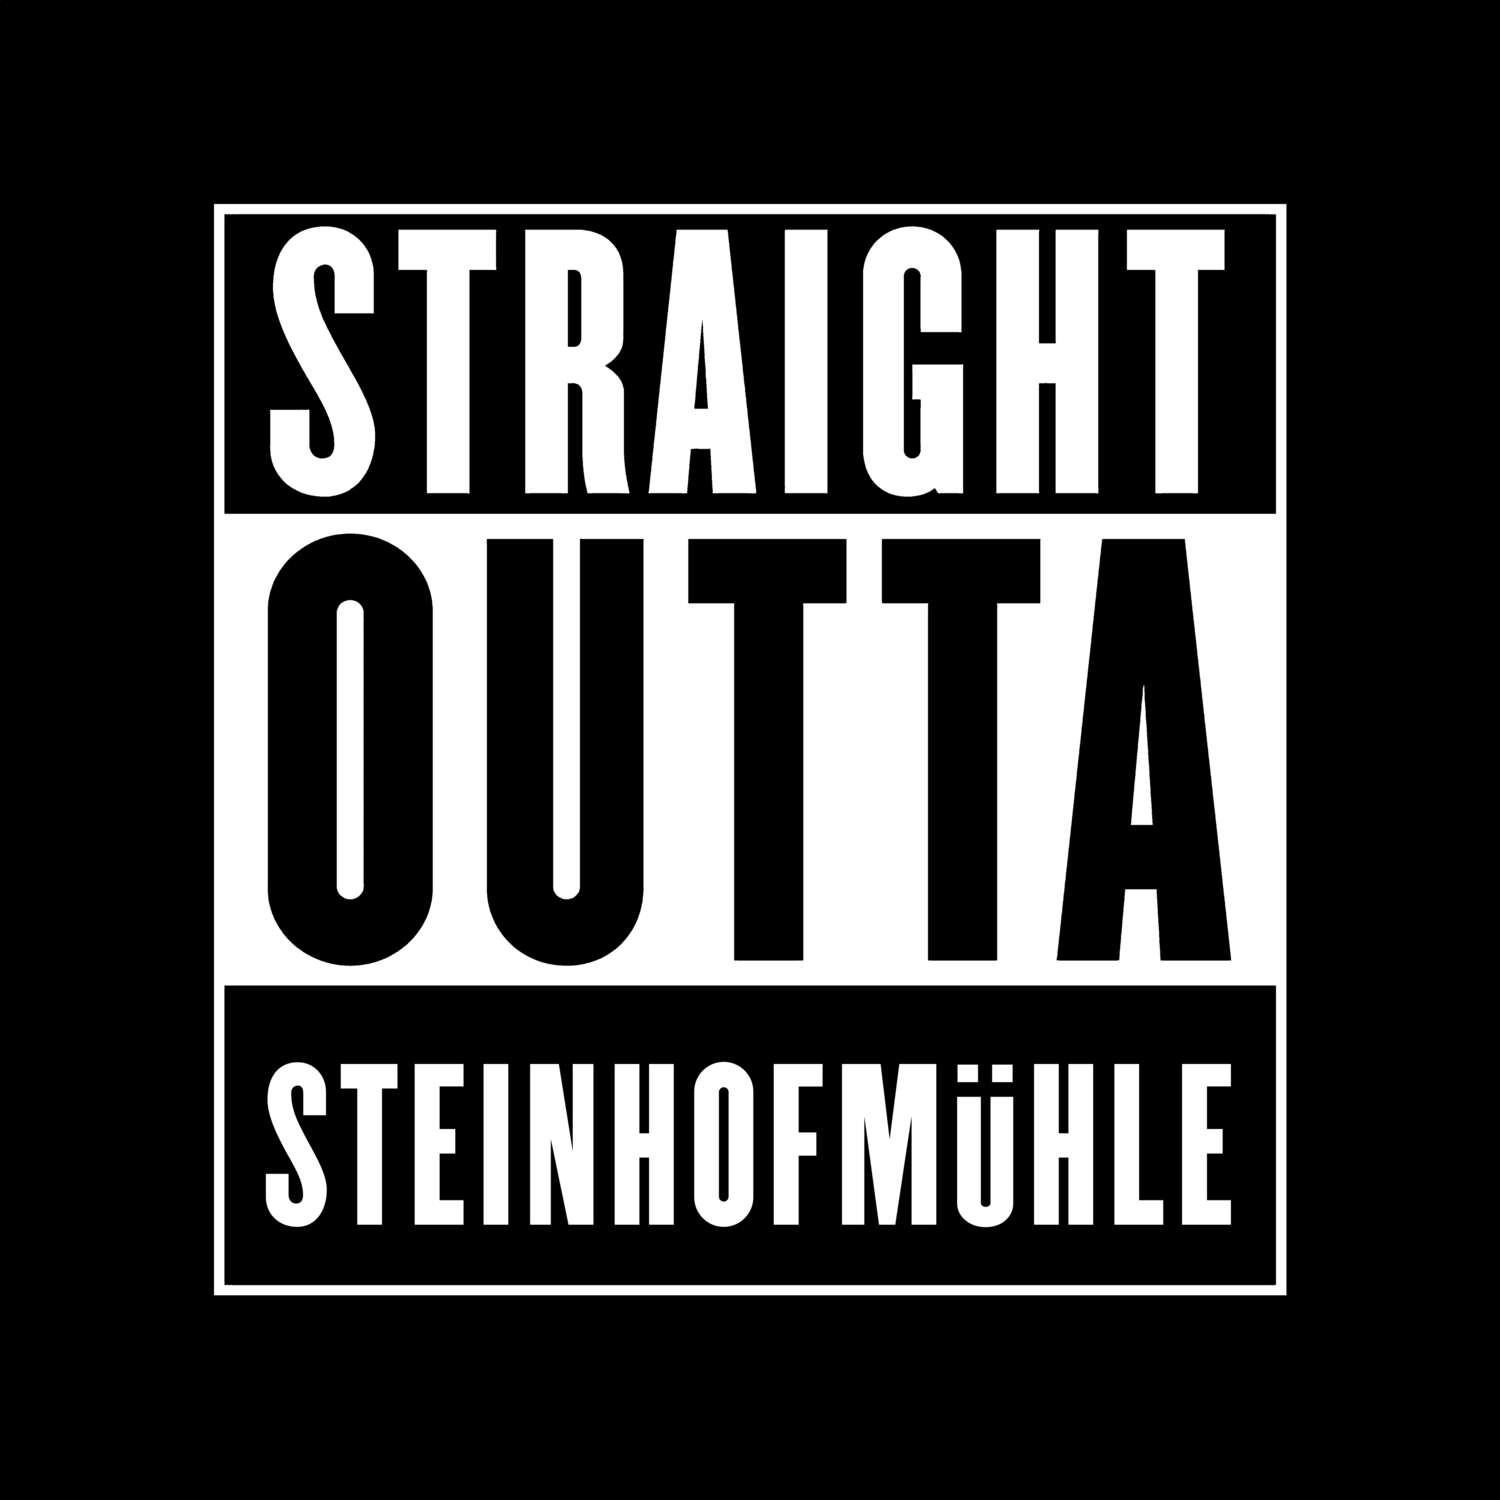 Steinhofmühle T-Shirt »Straight Outta«